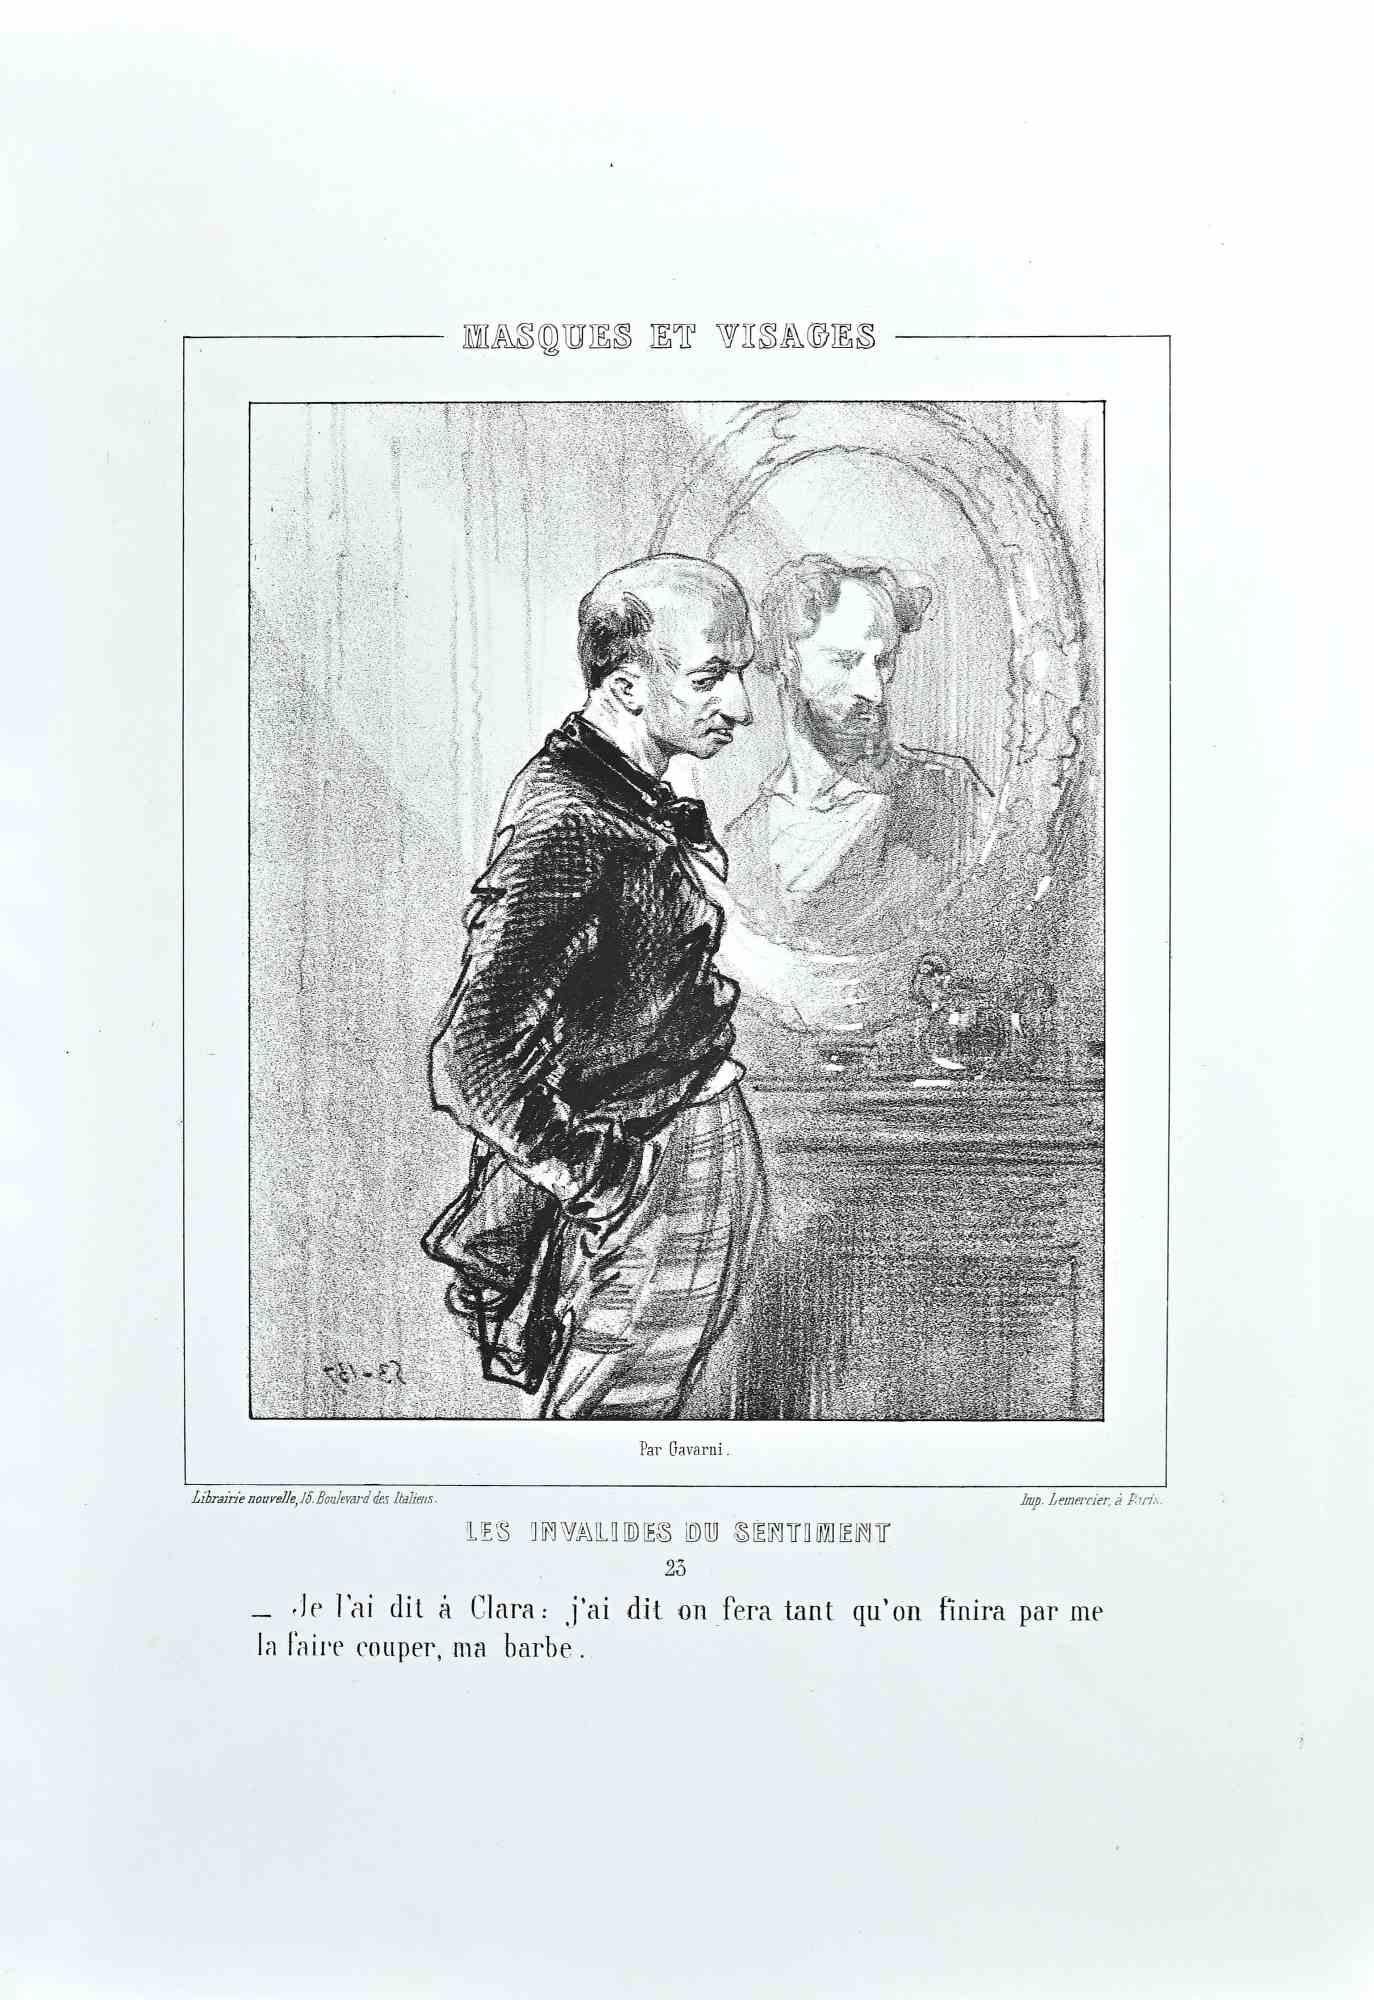 Les Invalides du Sentiment ist eine Lithografie auf elfenbeinfarbenem Papier, die von dem französischen Zeichner Paul Gavarni (alias Guillaume Sulpice Chevalier Gavarni, 1804-1866) Mitte des 19.

Aus der Serie der "Masques et Visages". Auf der